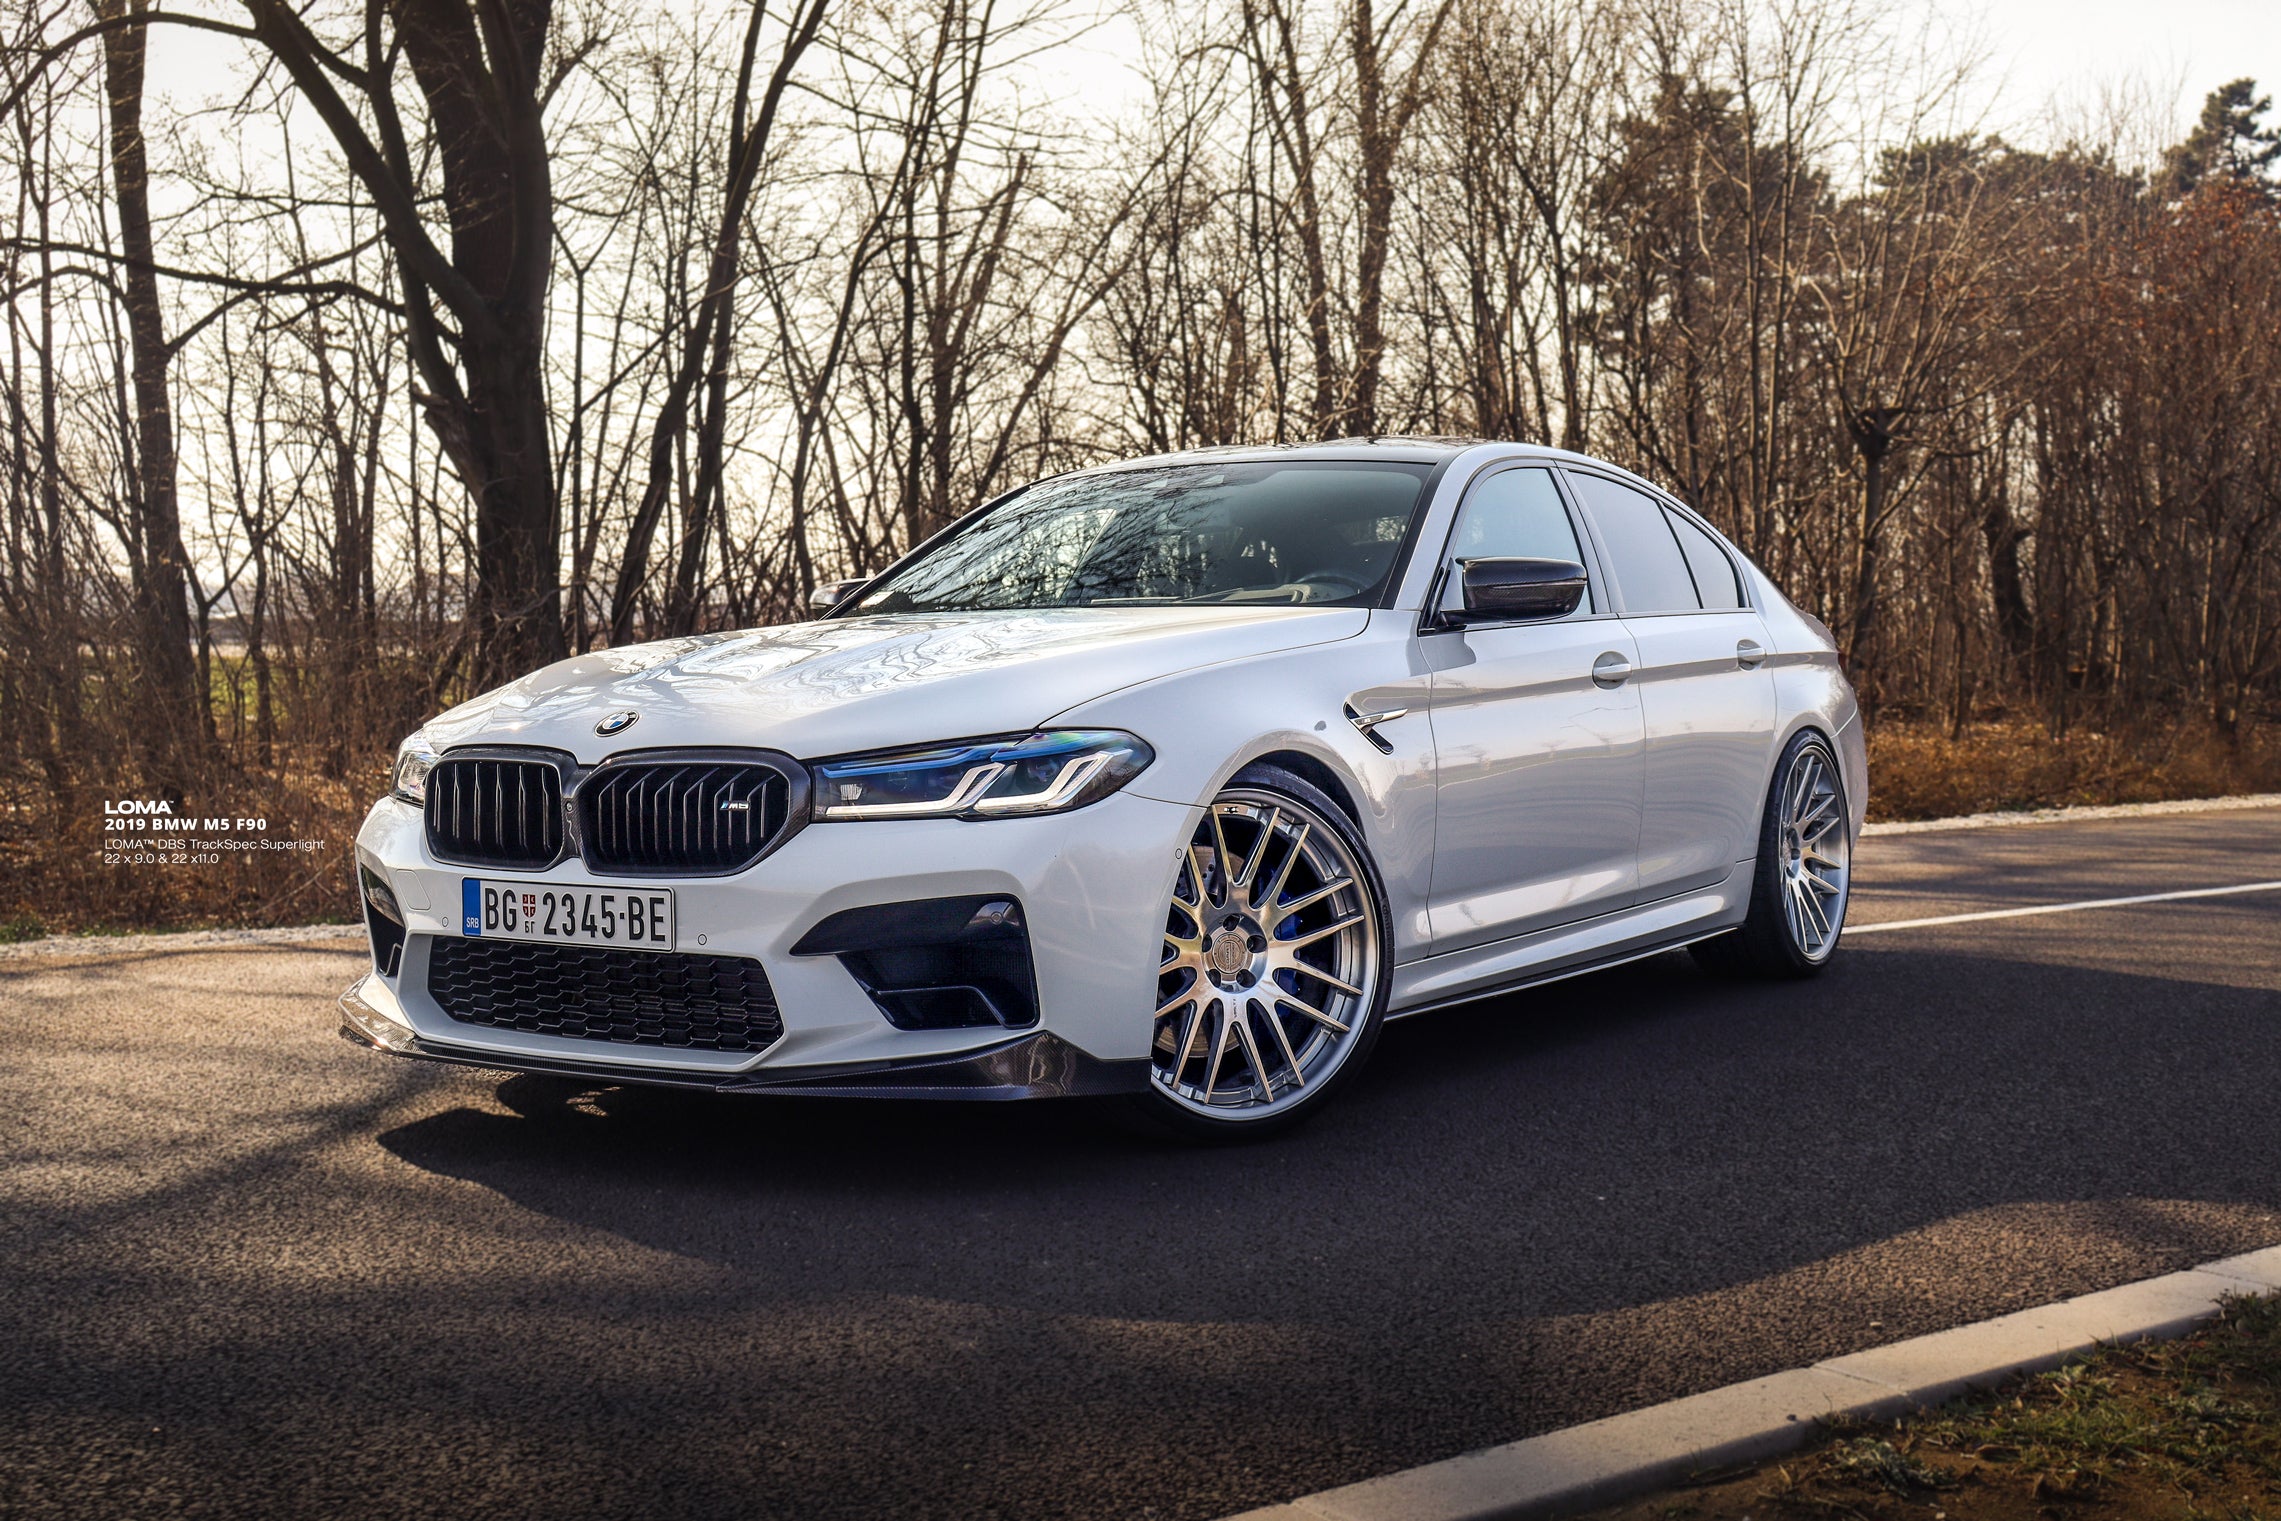 2019-BMW-M5-F90-on-LOMA-DBS-TrackSpec-Custom-Forged-Alloy-Wheels-6